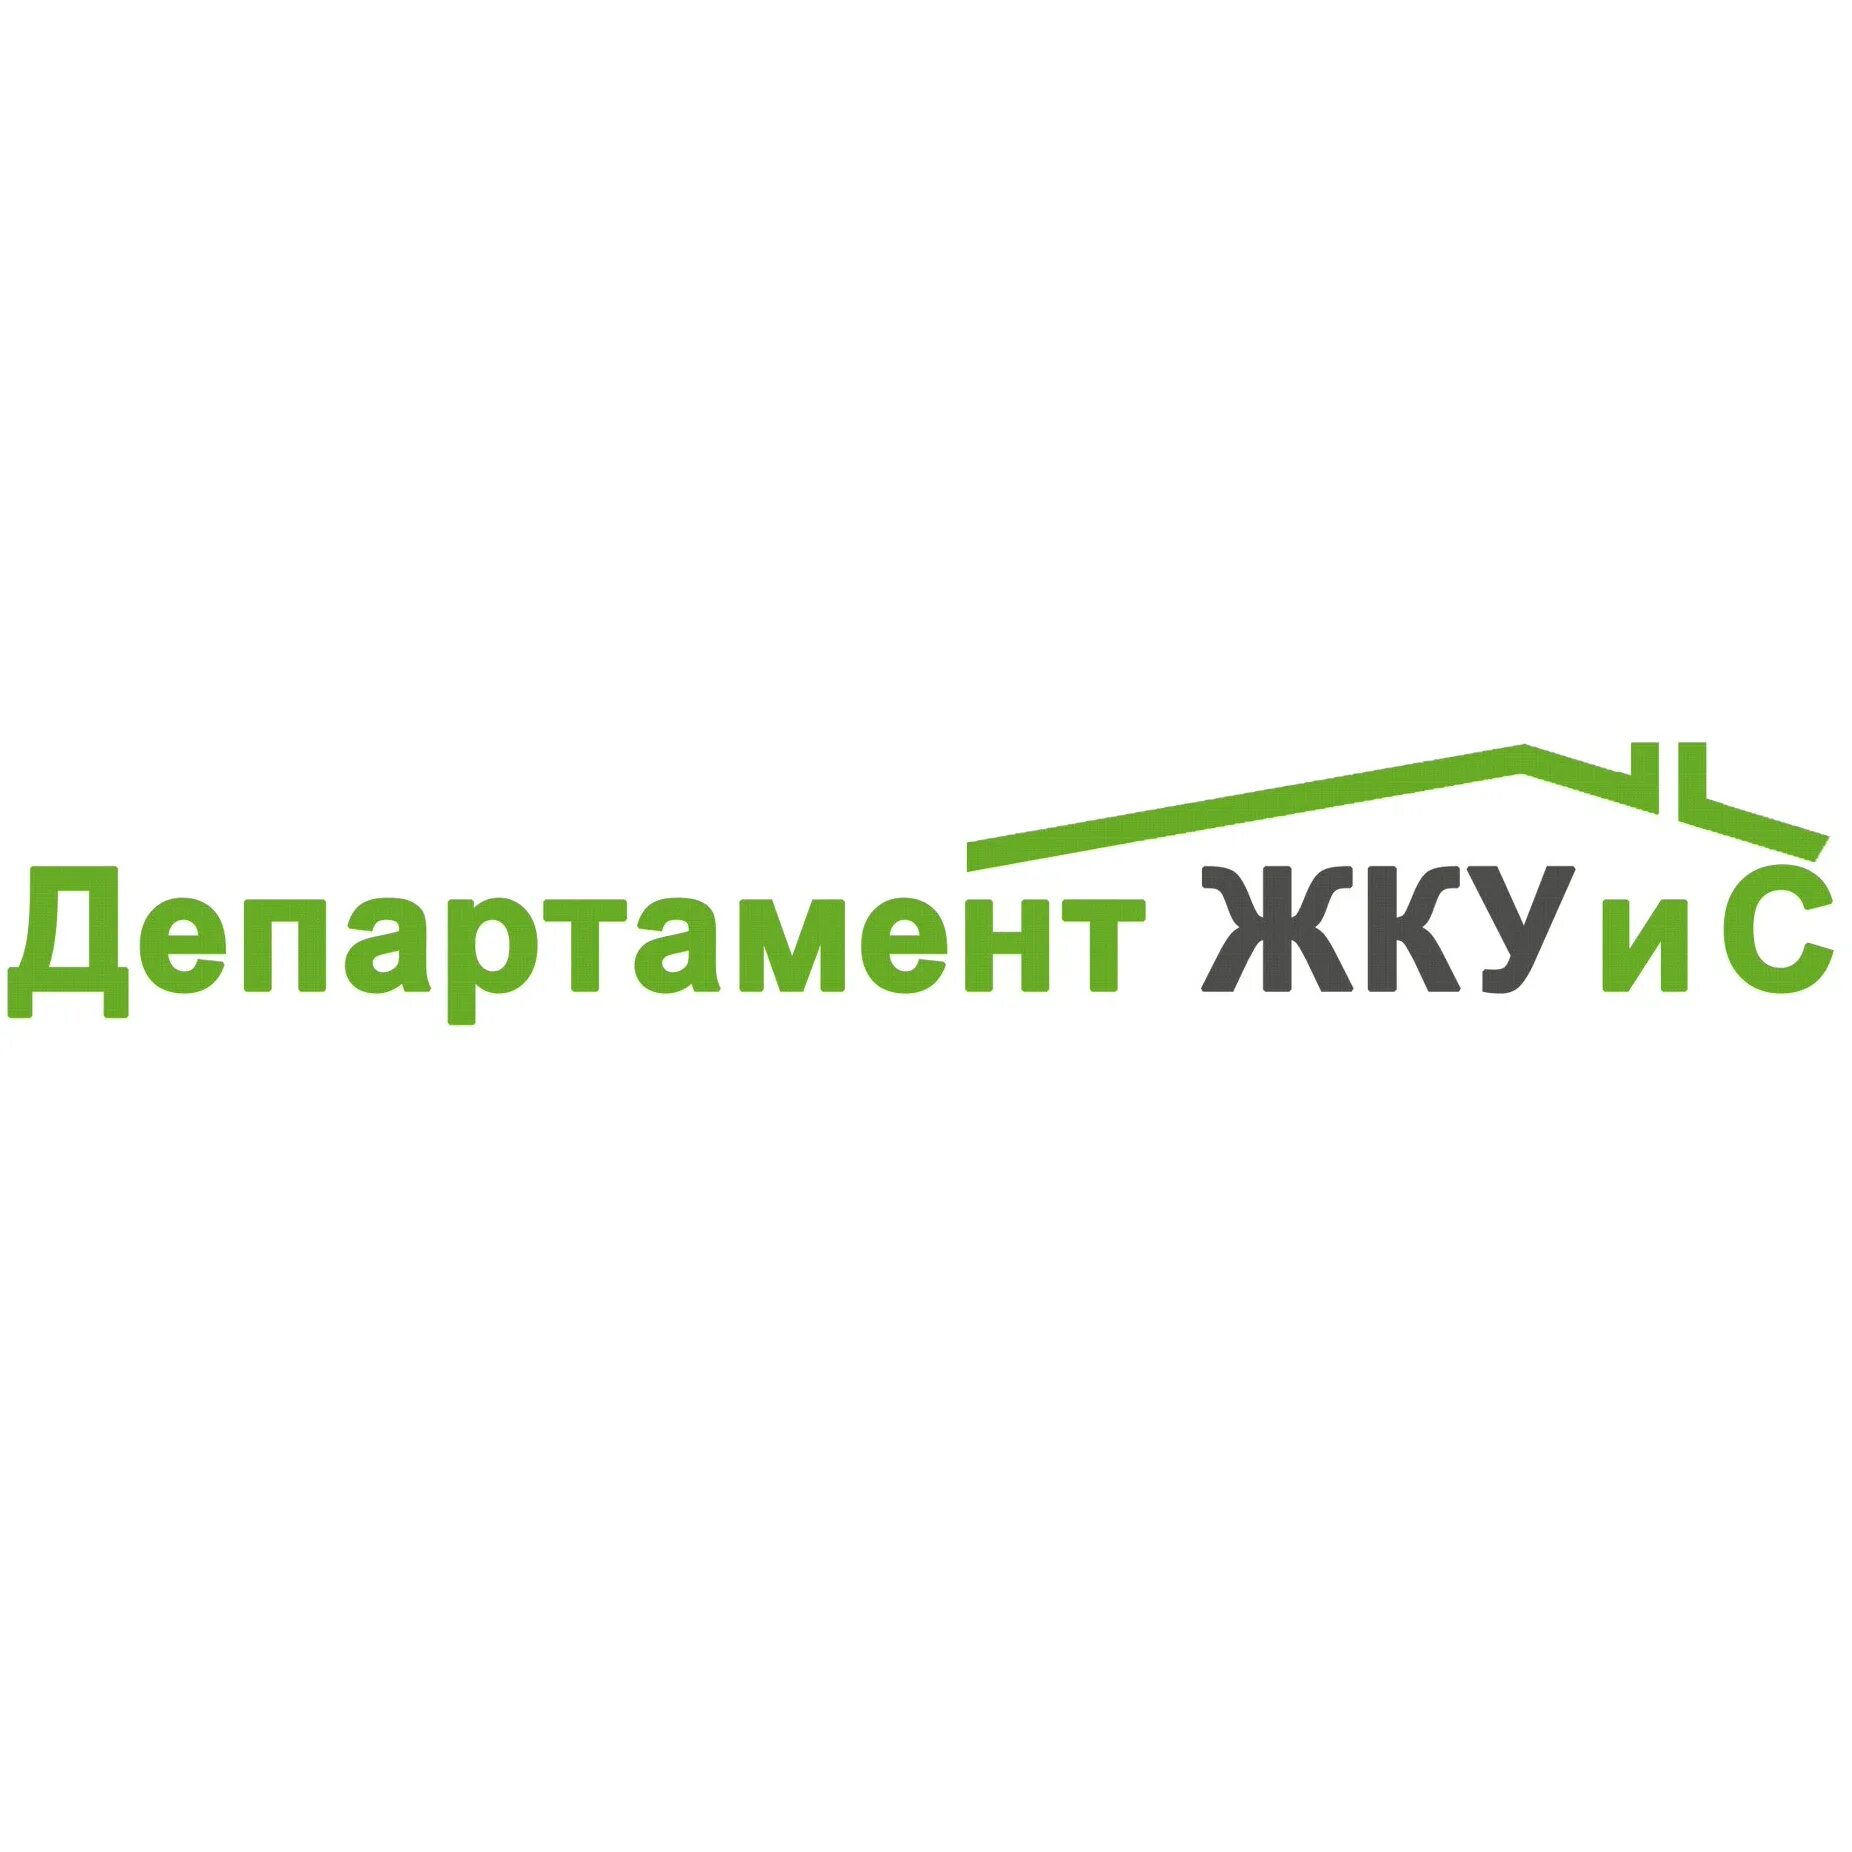 Ооо жку москва. Эмблема ЖКУ. ЖКУ Москва логотип. Департамент ЖКХ логотип. Департамент коммунального хозяйства и транспорта логотип.